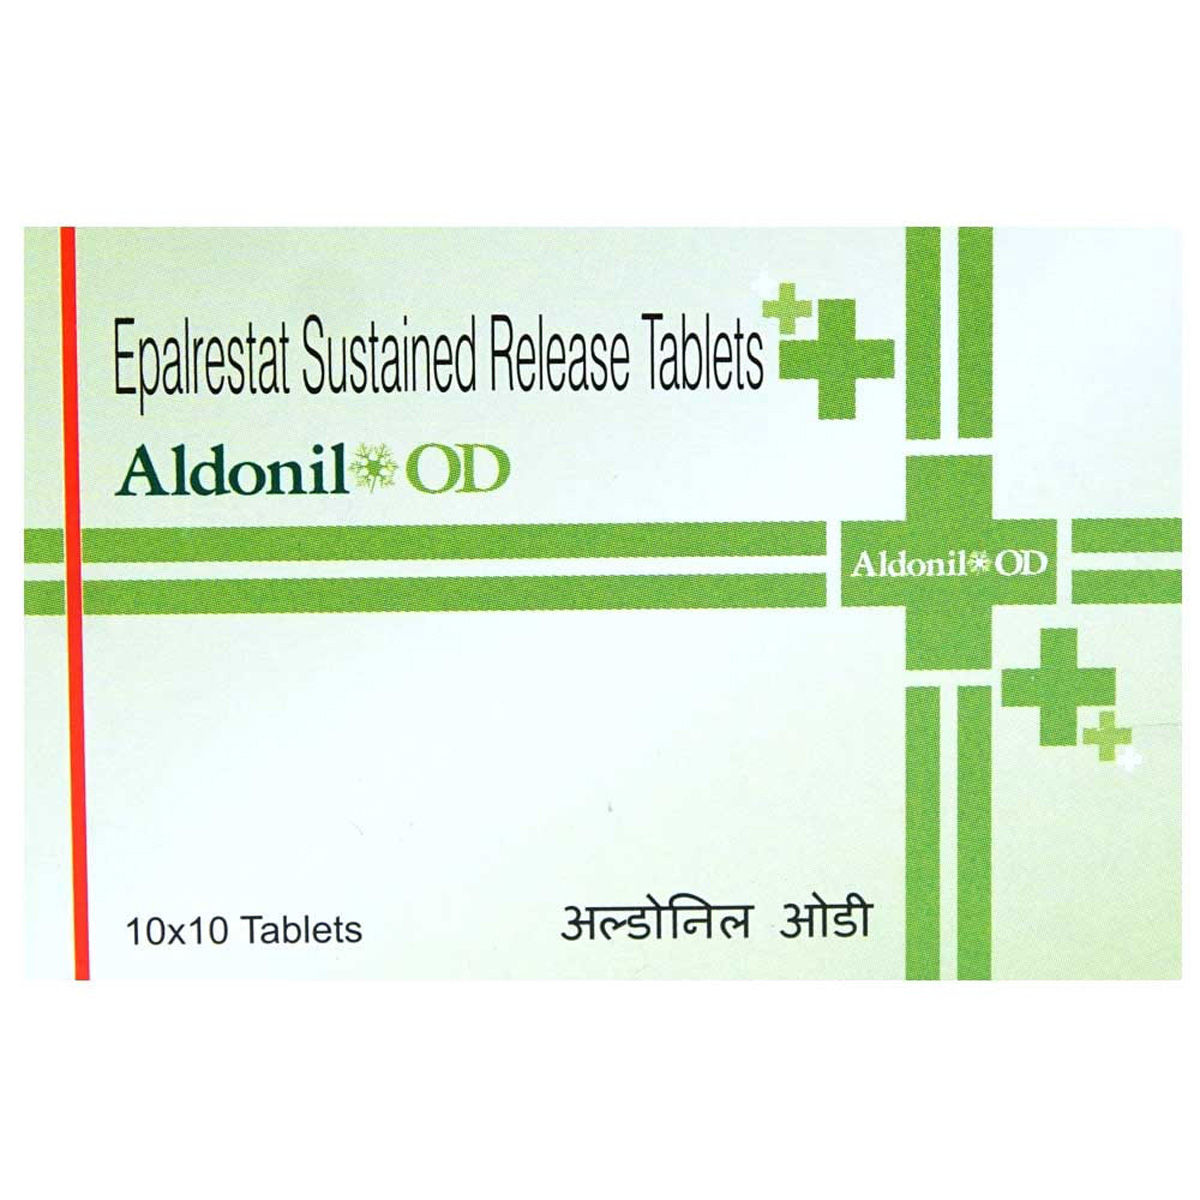 Aldonil OD Tablet 10's, Pack of 10 TABLETS